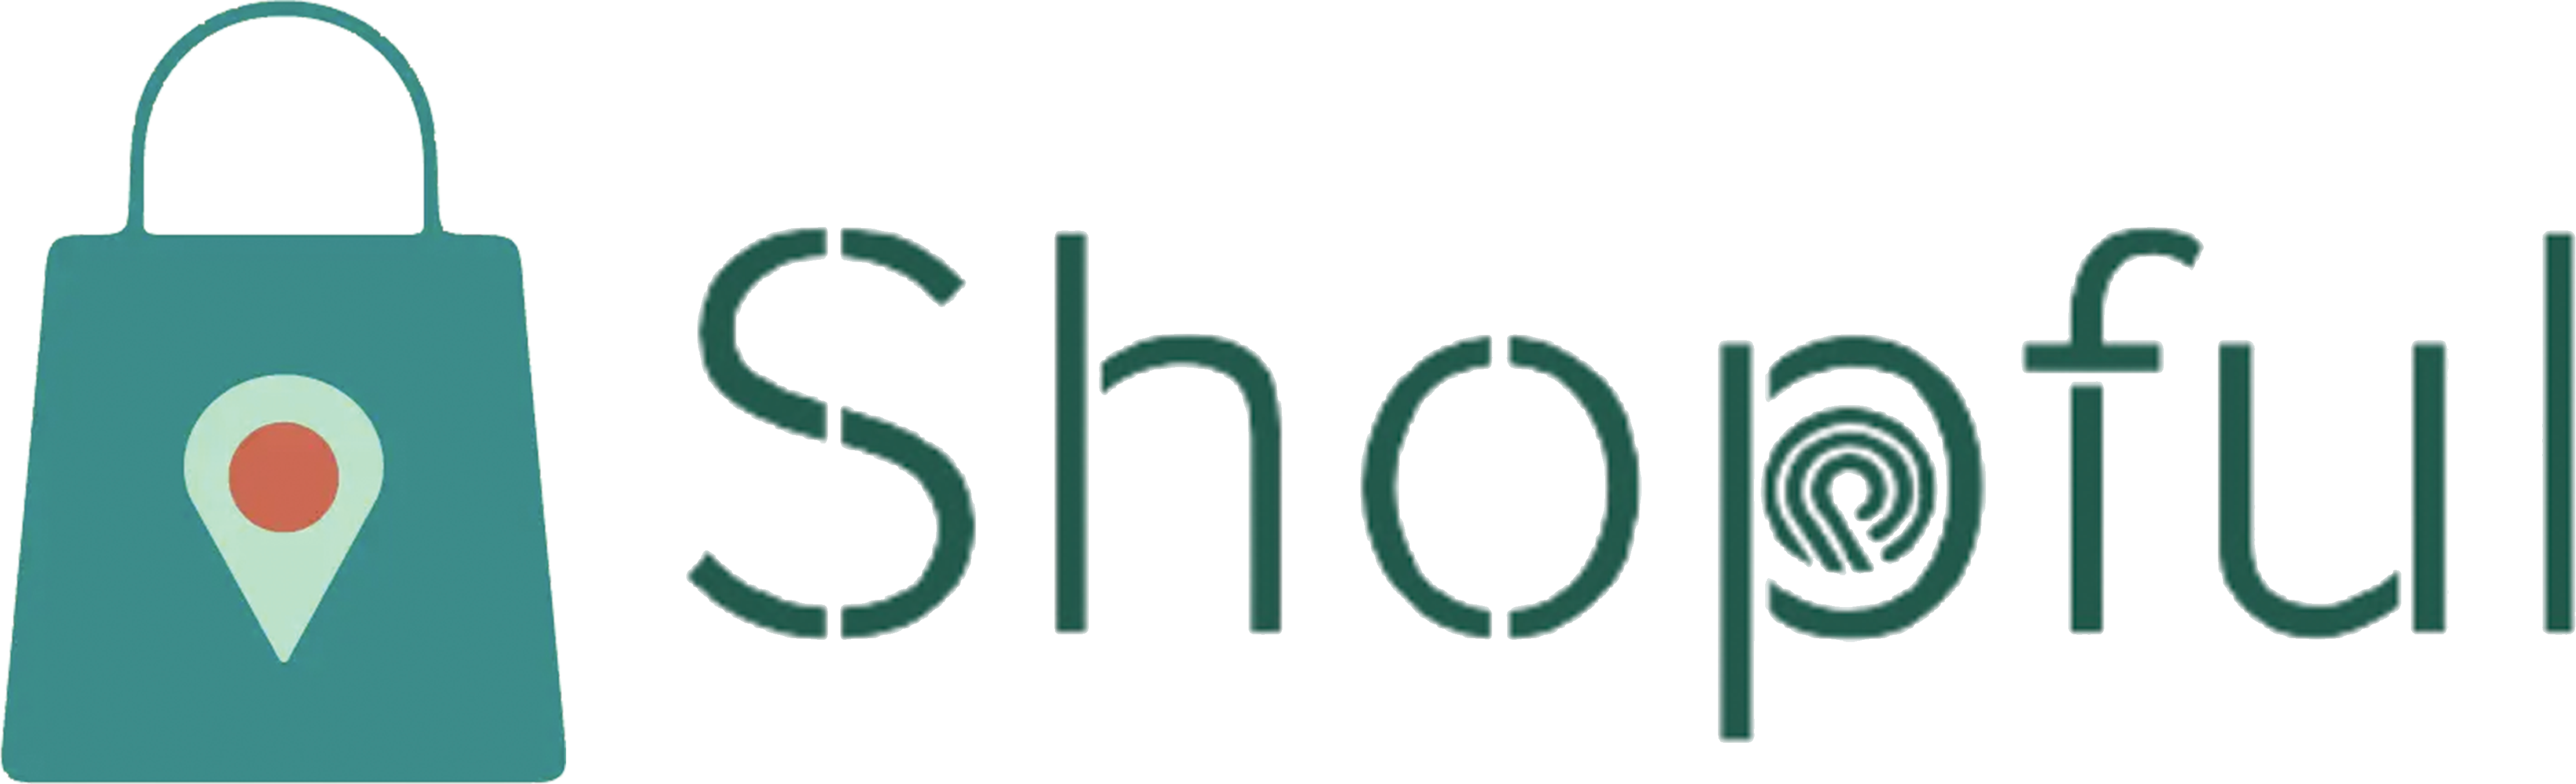 Shopful Logo